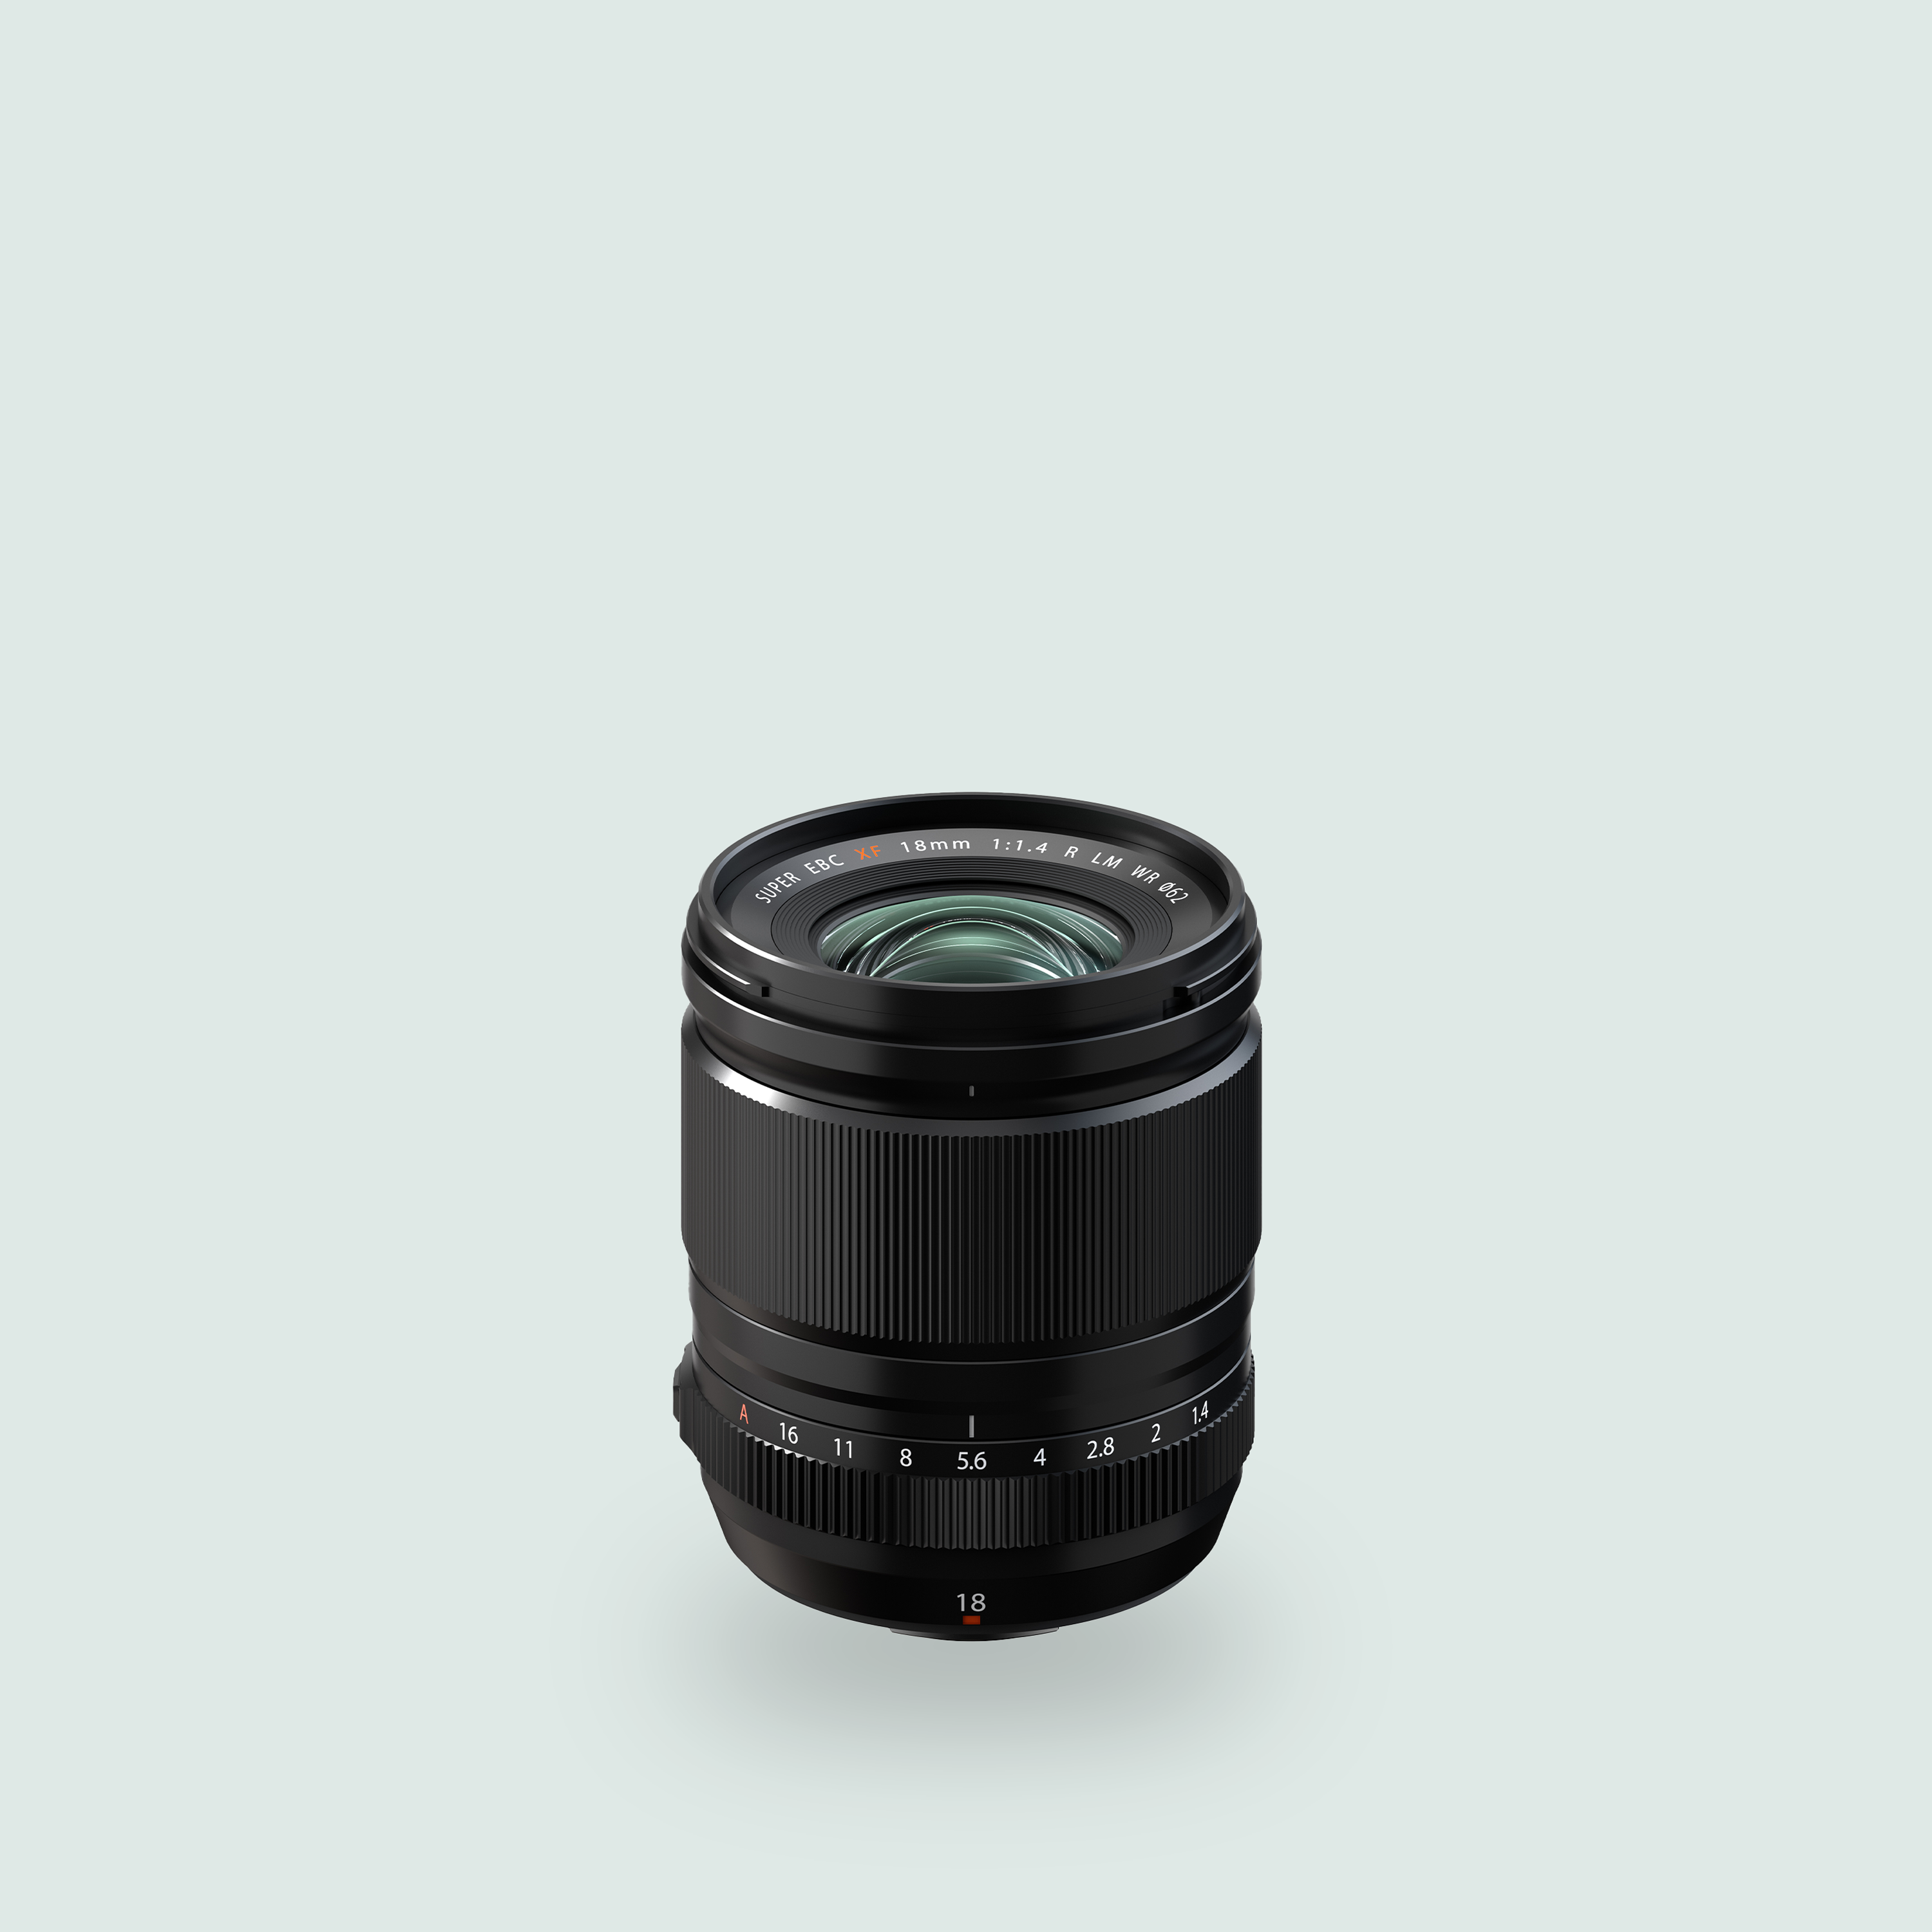 XF 90mm F2 R LM WR Lens | Fujifilm AU House of Photography